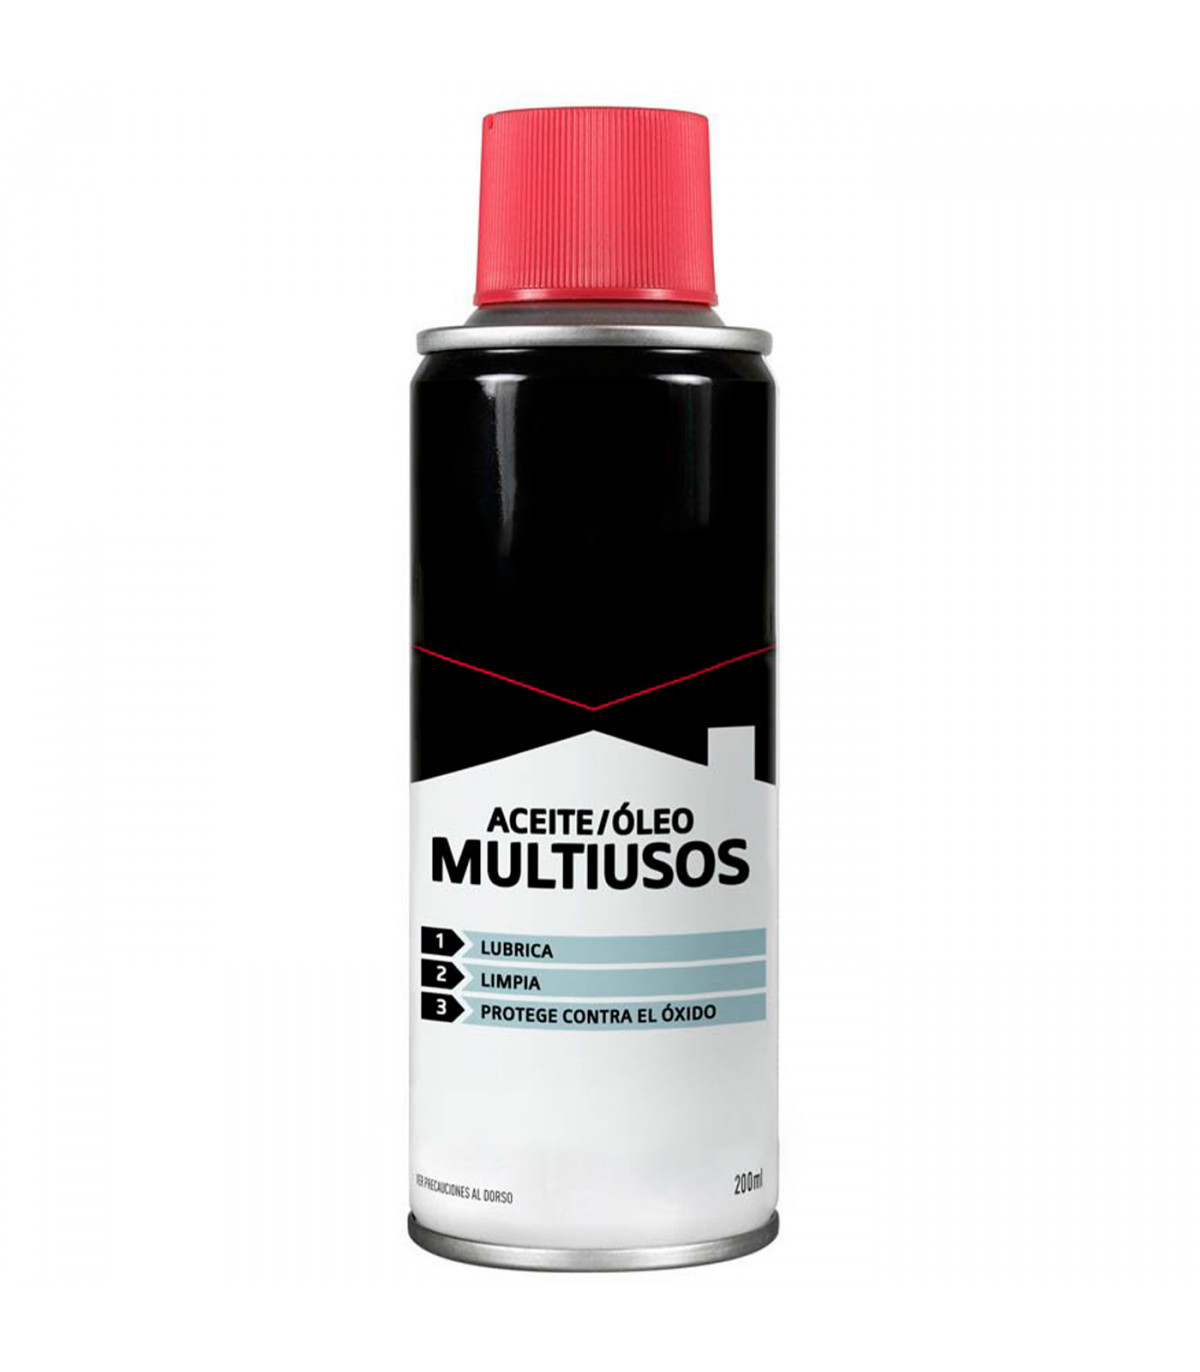 Tradineur - Aceite multiusos 3 en 1, spray de aceite anticorrosivo con  cánula, coches, bicicletas, lubrica, limpia y protege con